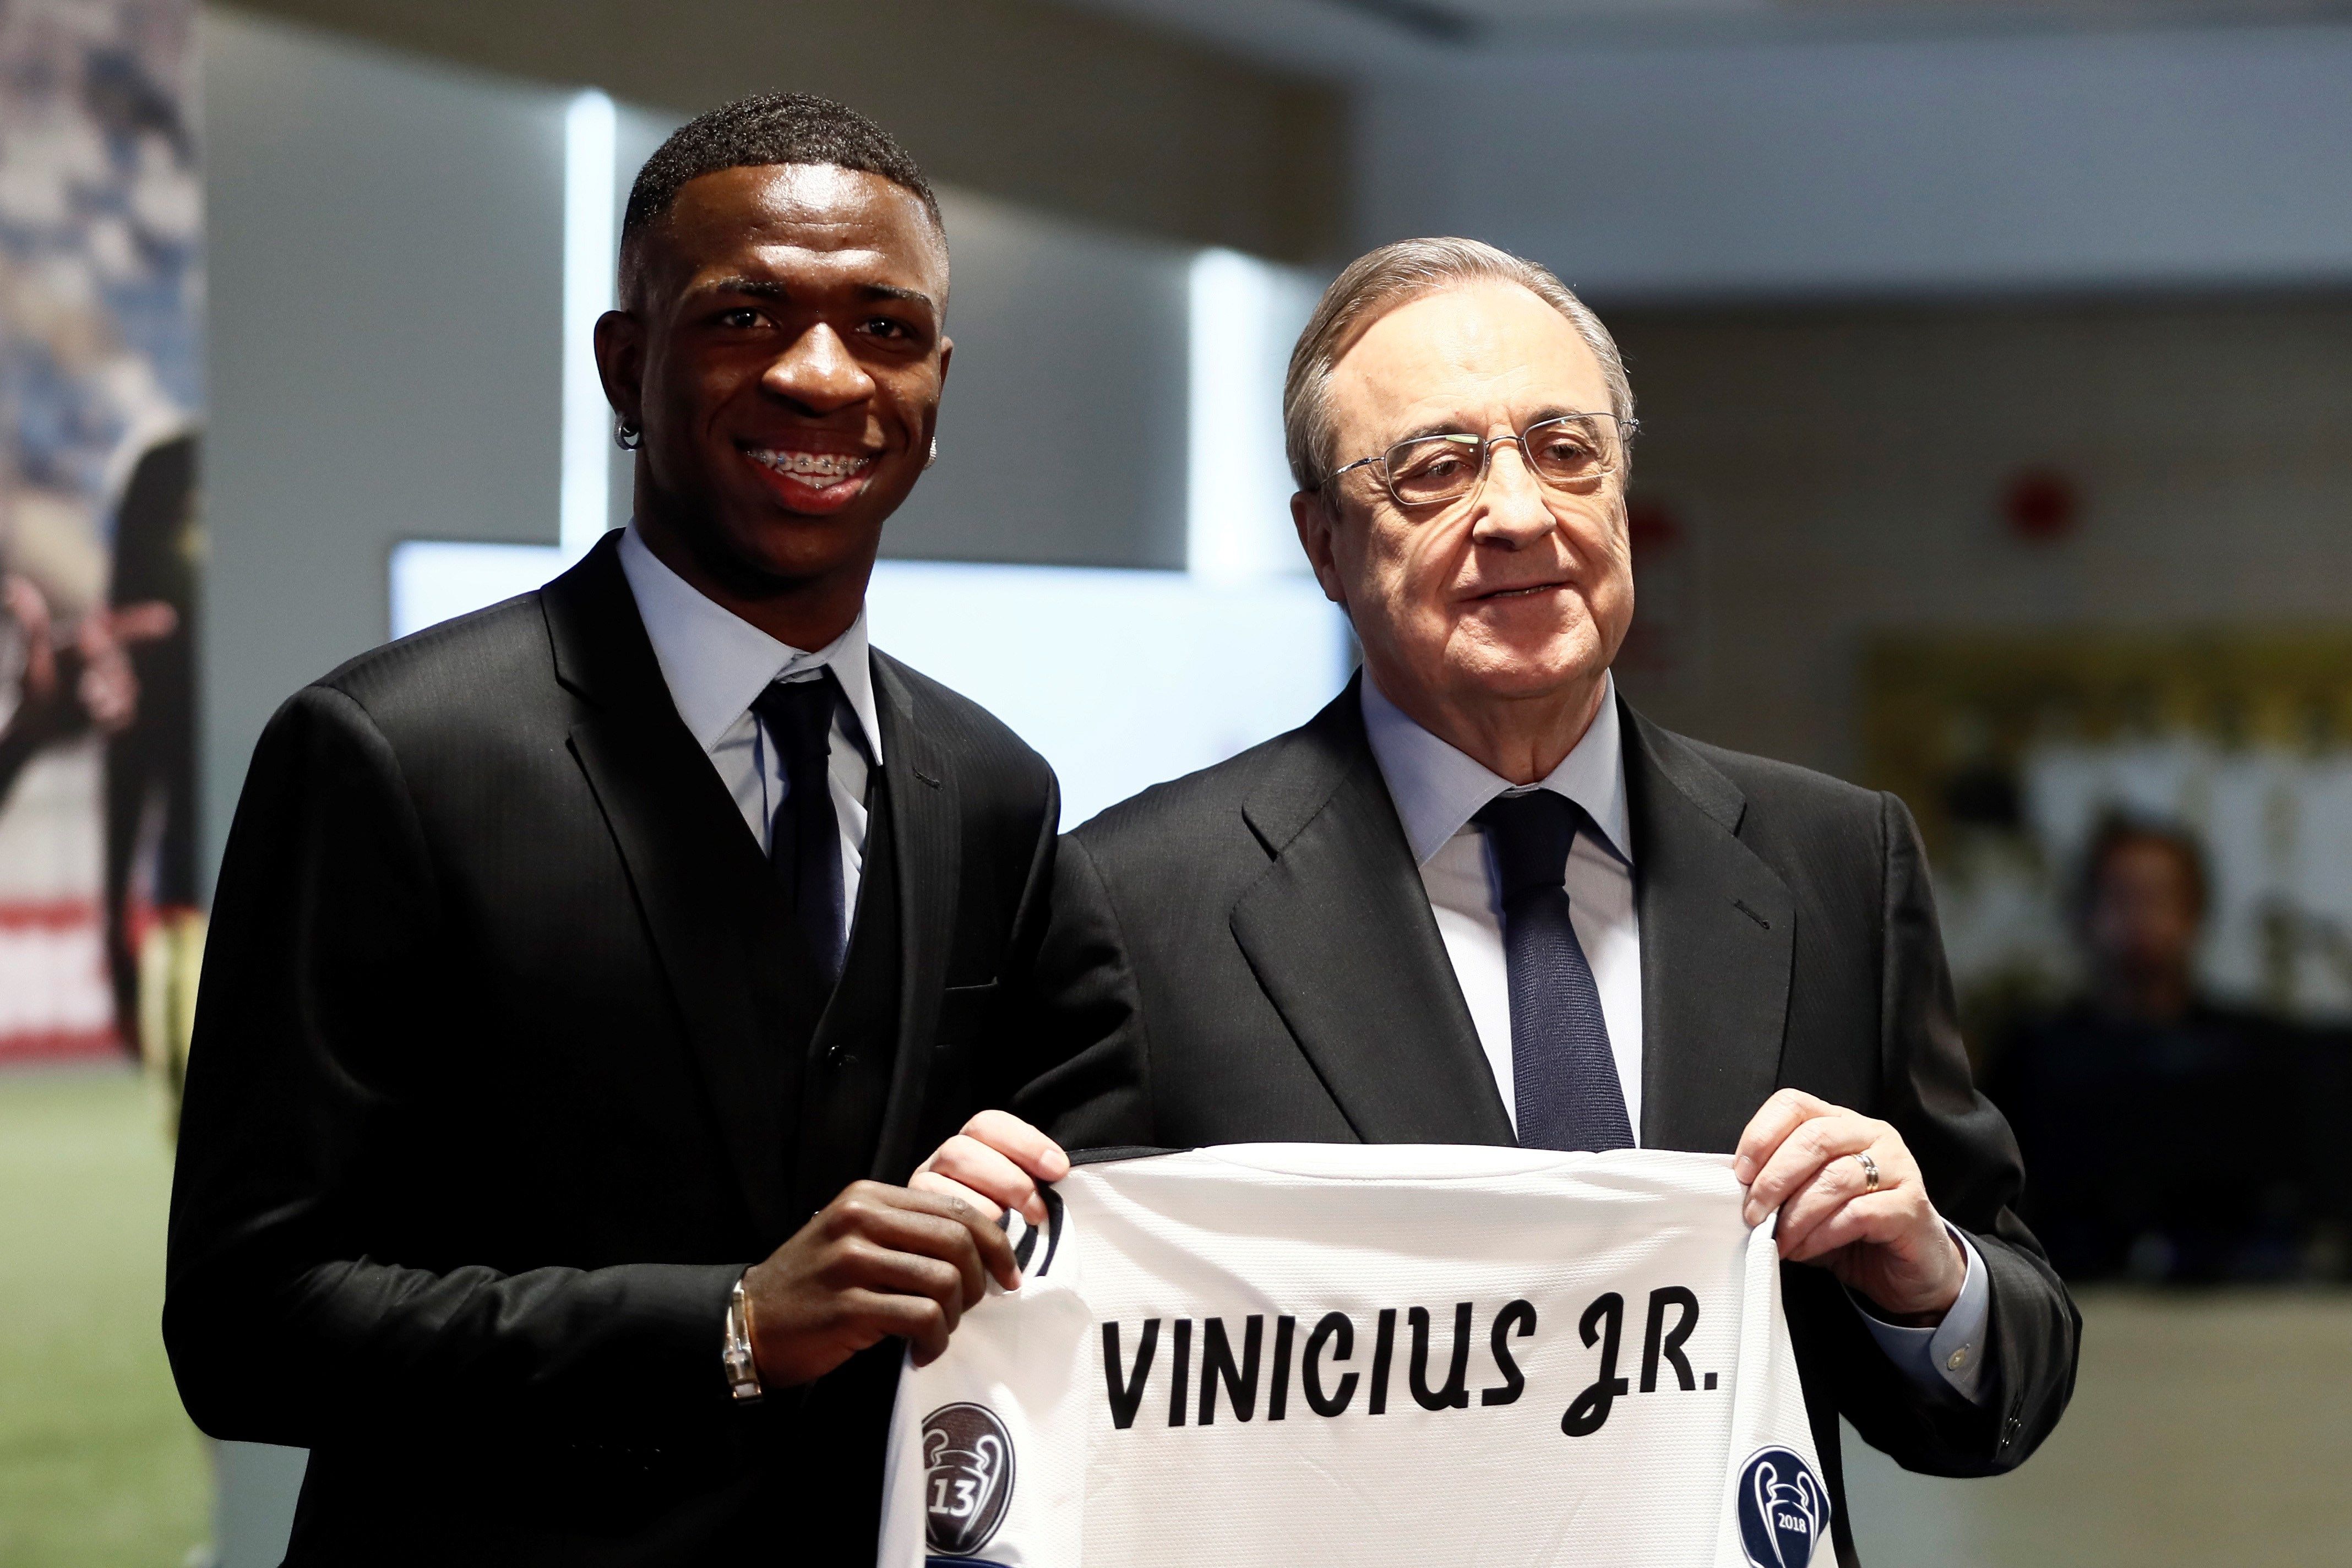 Real Madrid presenta a Vinicius Junior, la perla brasileña de 18 años